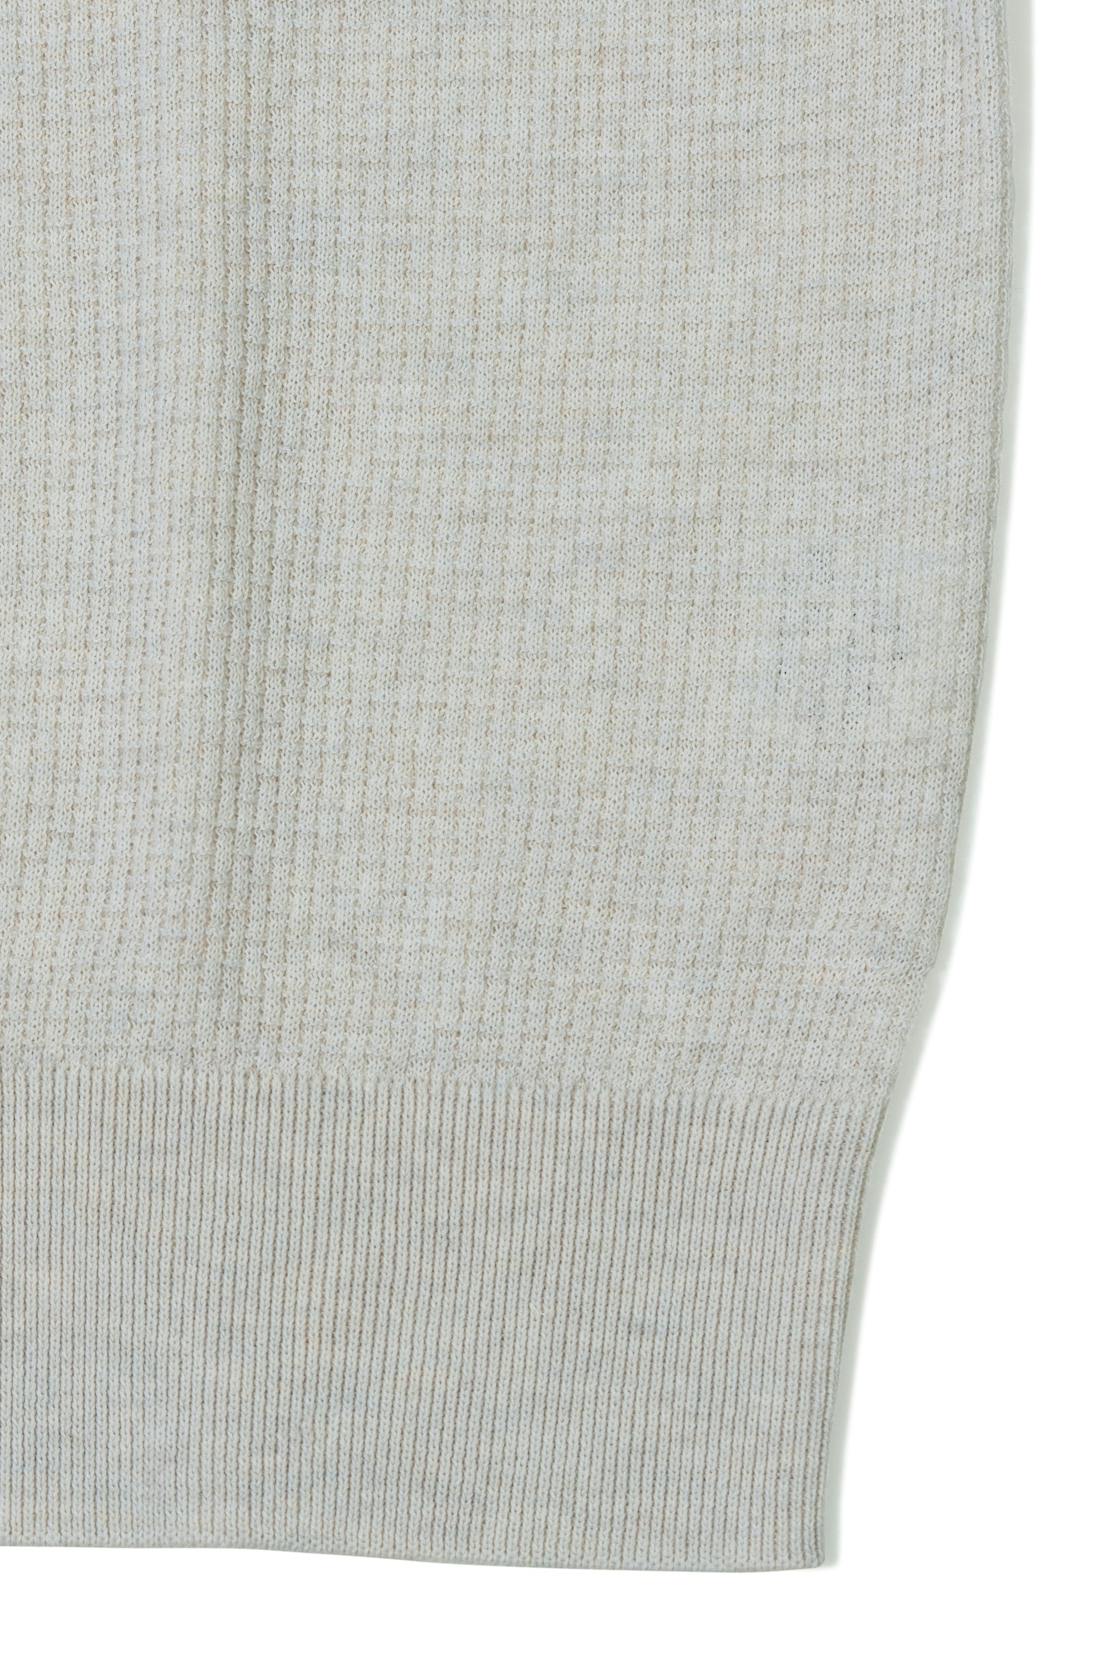 Liverano Ecru Cotton Short Sleeve Spread Collar Polo